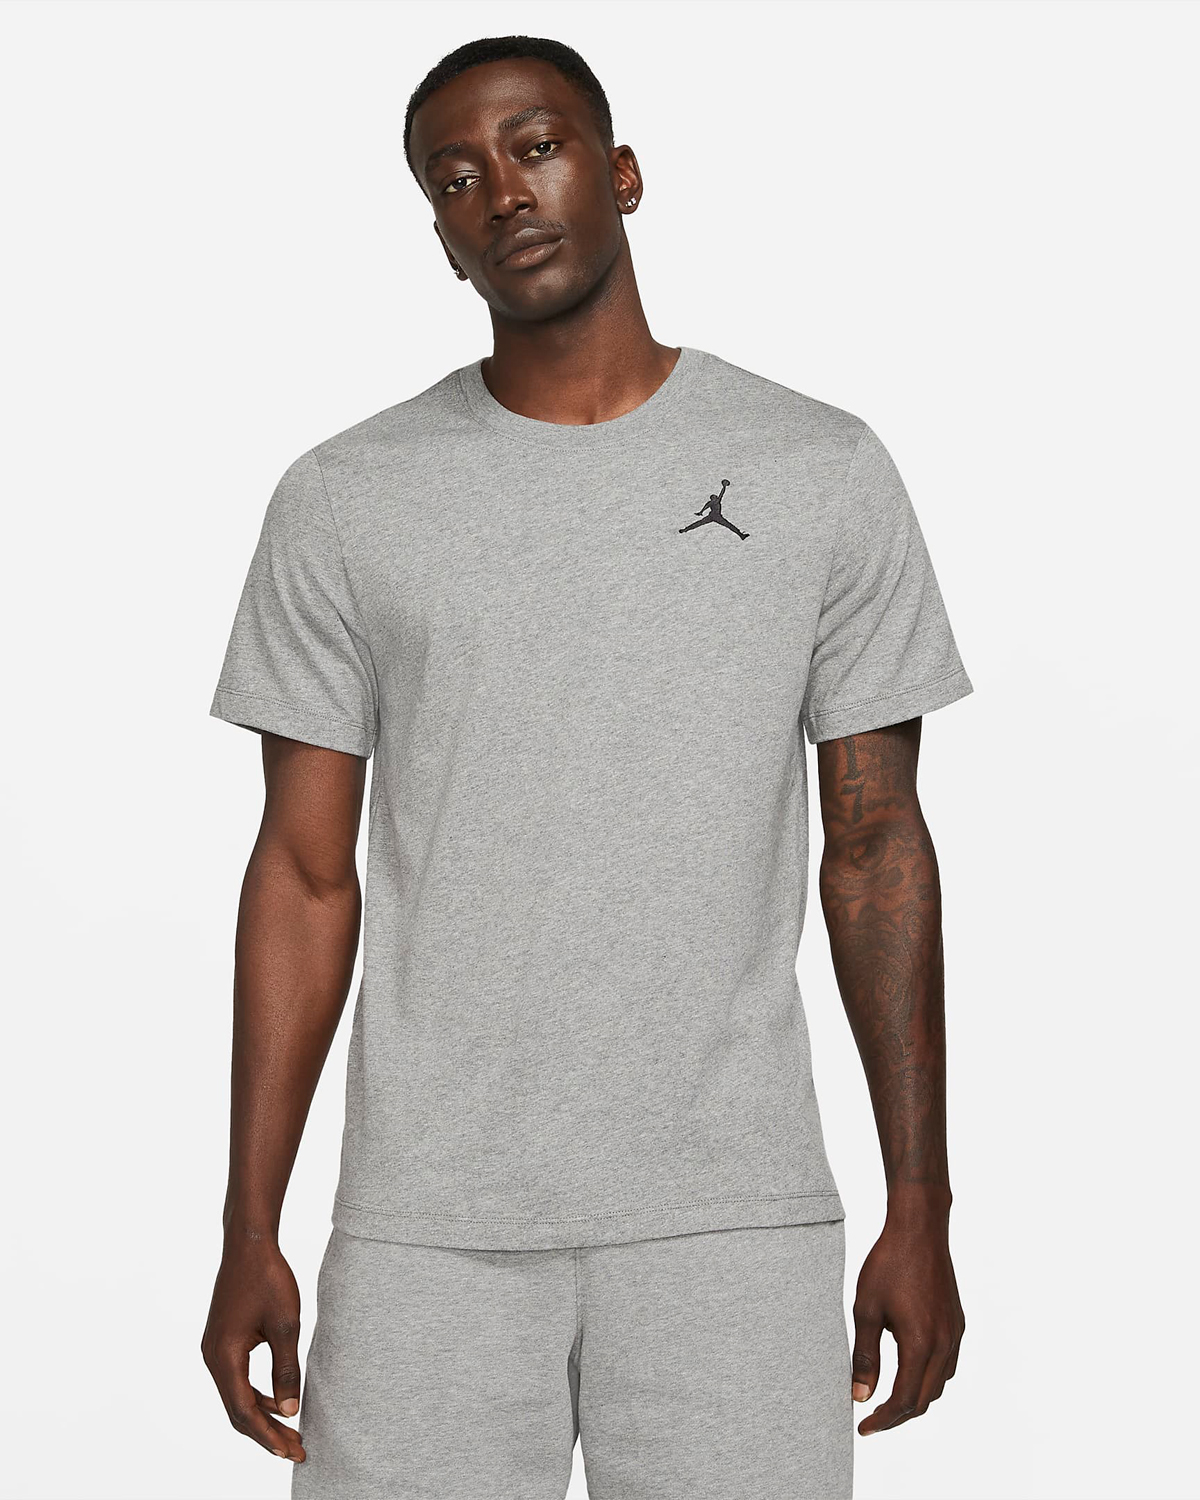 Jordan-Jumpman-T-Shirt-Grey-Carbon-Heather-1